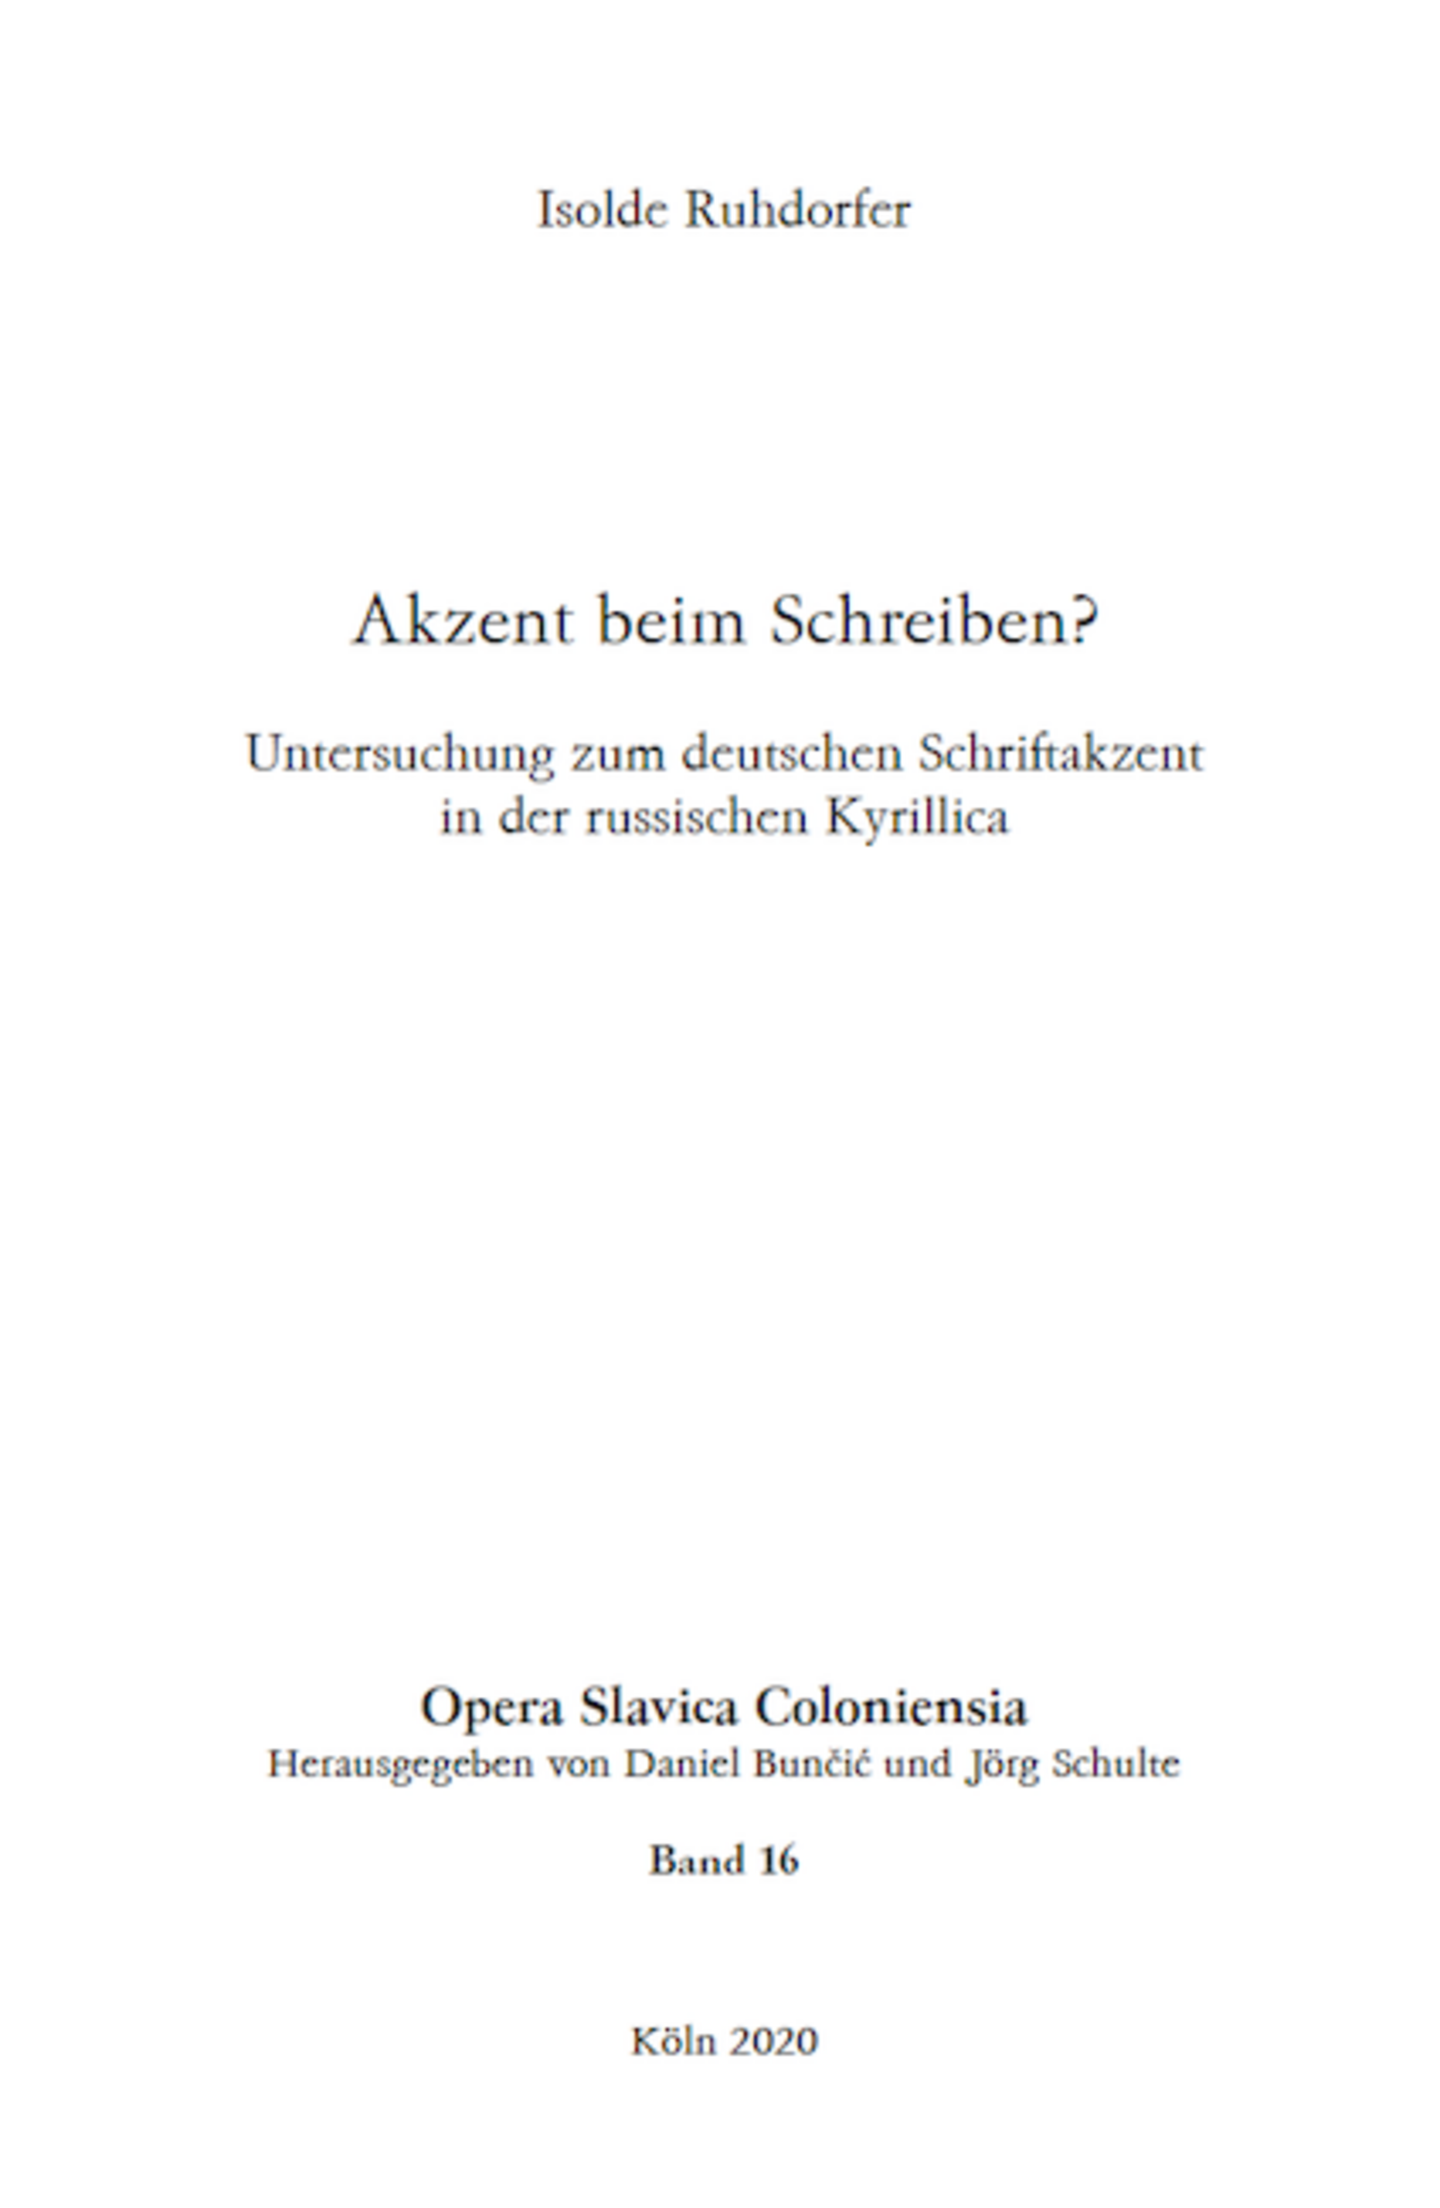 Opera Slavica Coloniensia, Bd. 16: Isolde Ruhdorfer (2020) Akzent beim Schreiben? Untersuchung zum deutschen Schriftakzent in der russischen Kyrillica